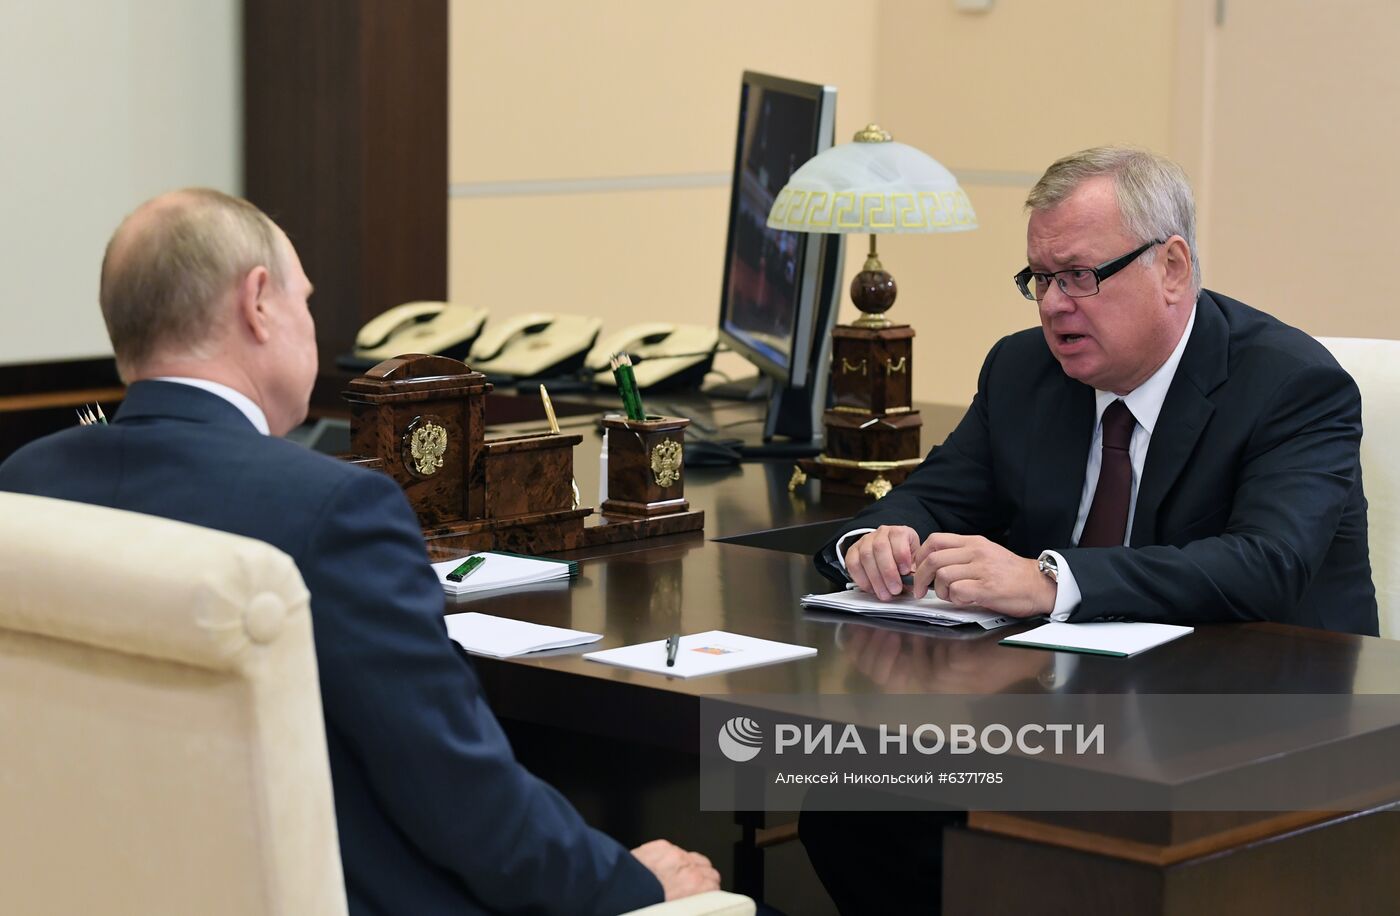 Рабочая встреча президента РФ В. Путина с председателем правления ВТБ А. Костиным